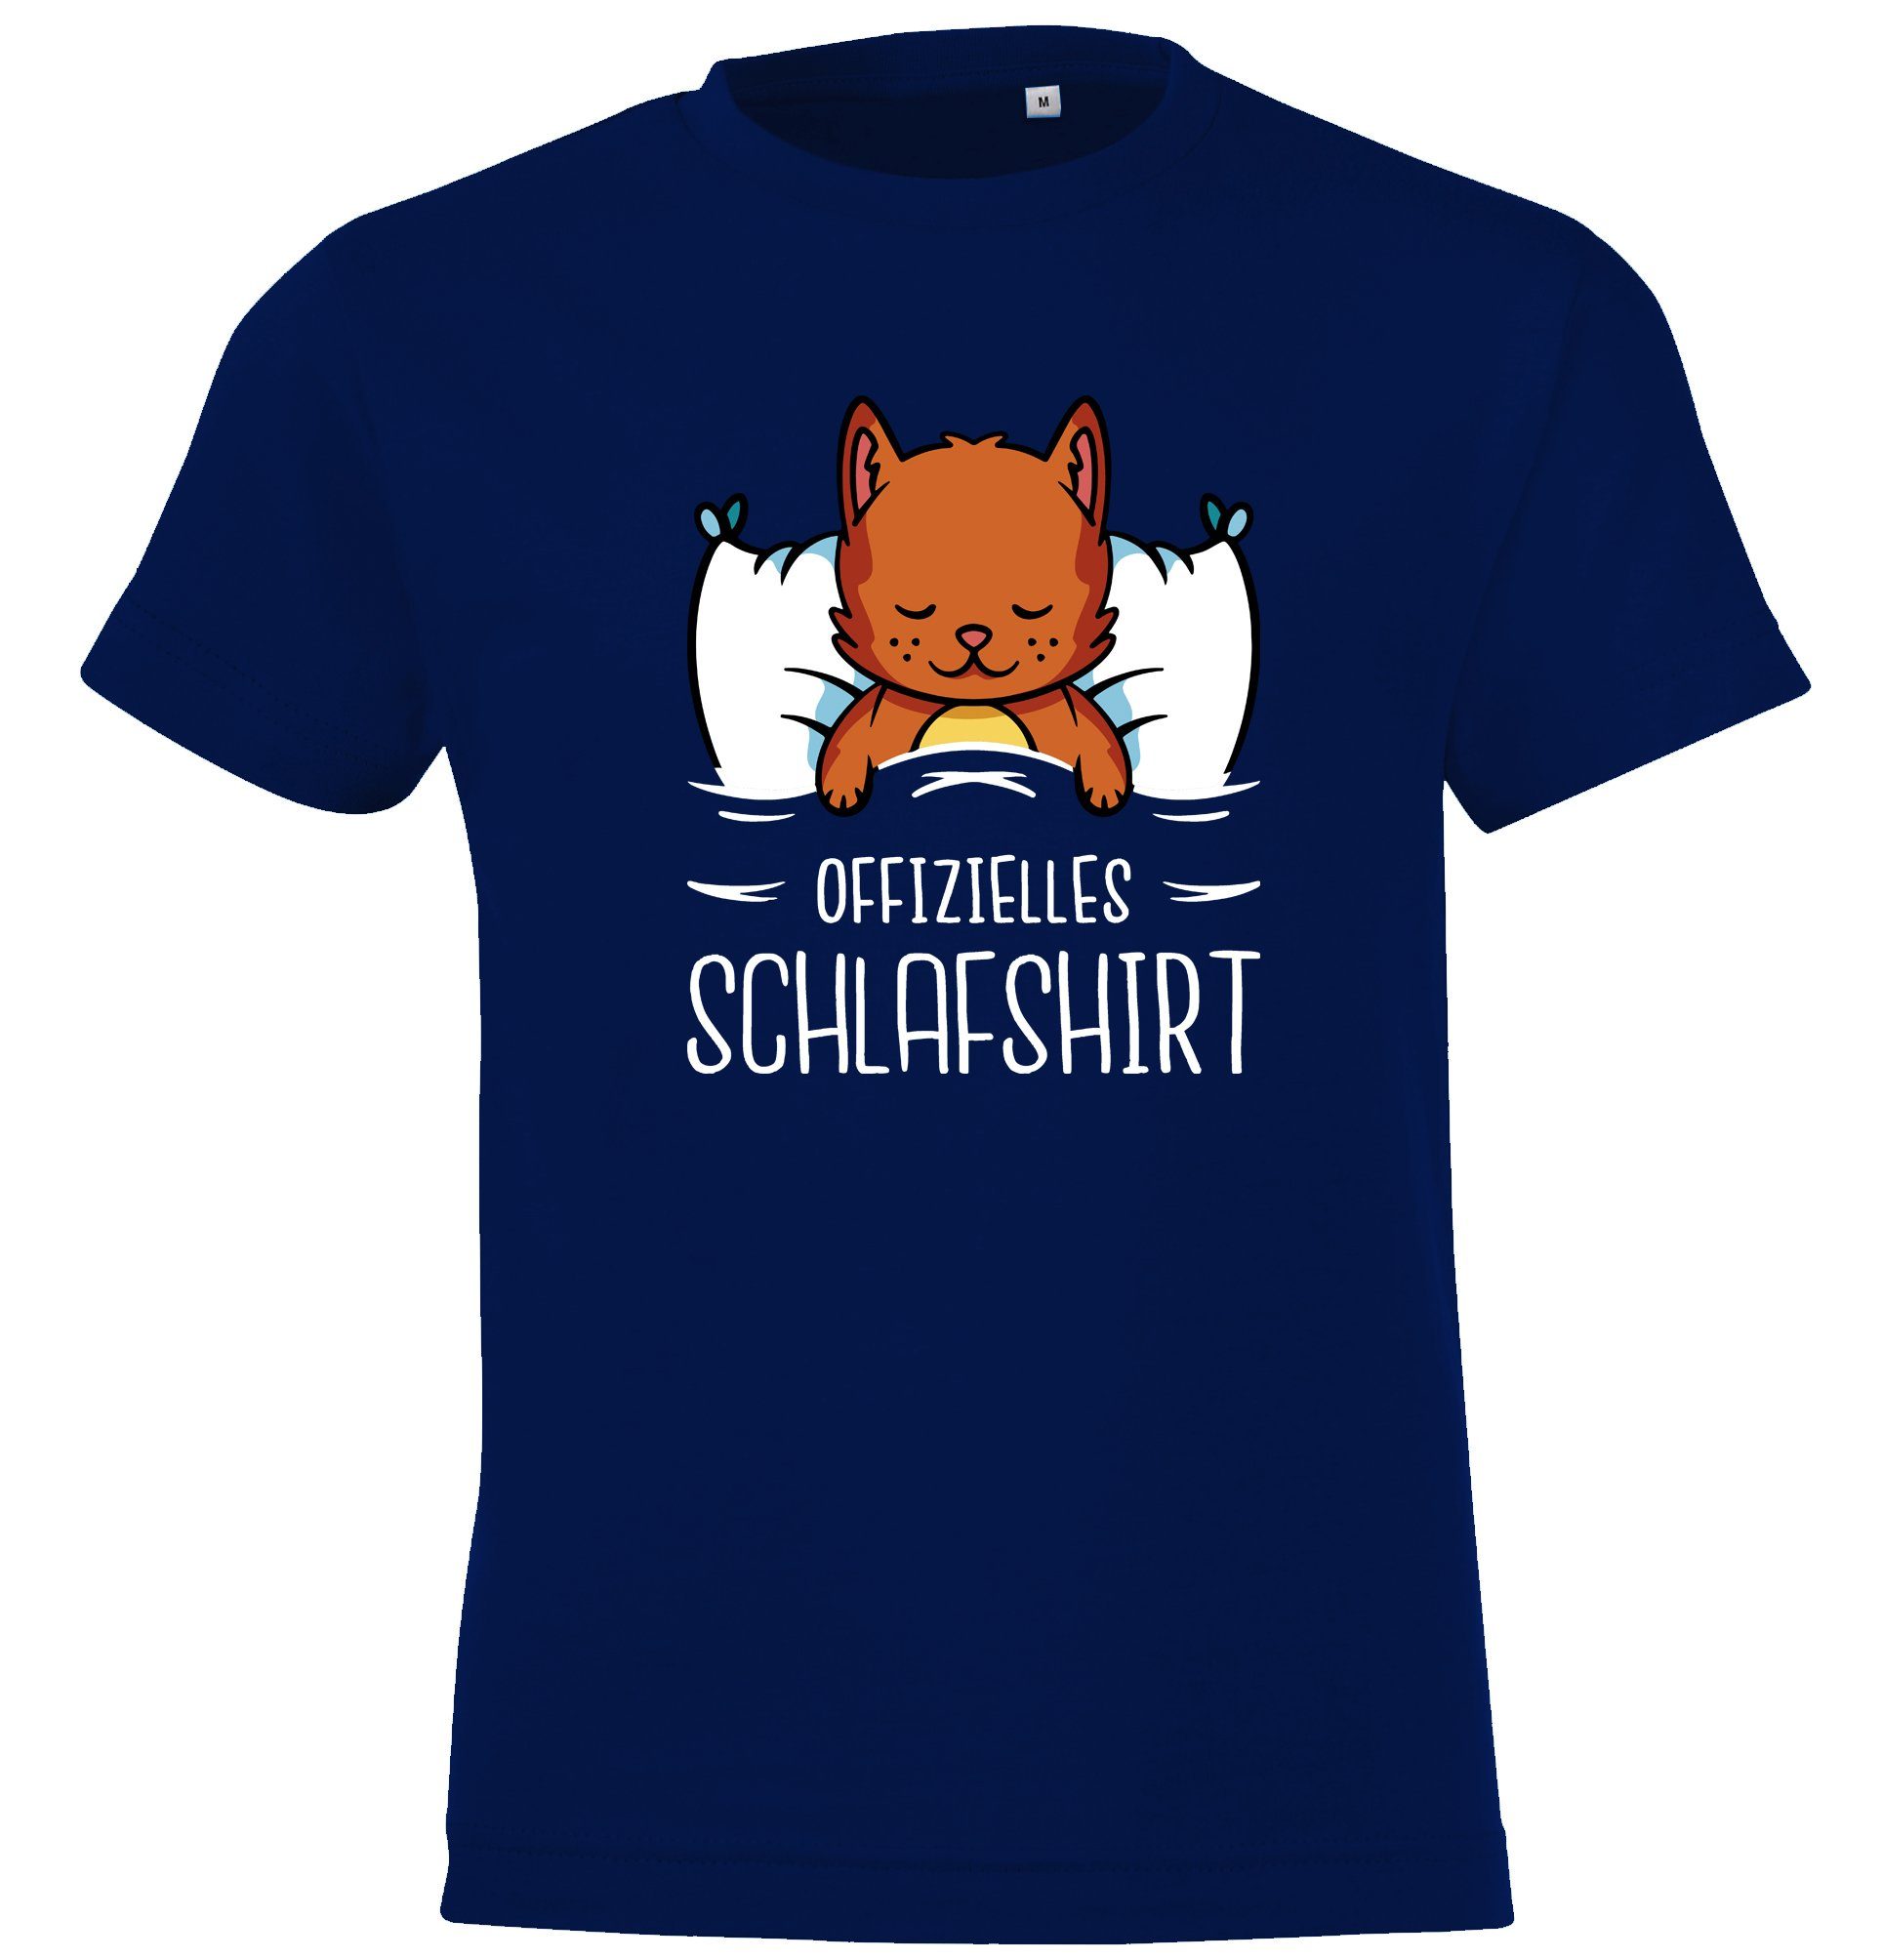 Youth Designz T-Shirt Offizielles Schlafshirt mit Katze Kinder Shirt für Jungen und Mädchen mit lustigem Frontprint Navy